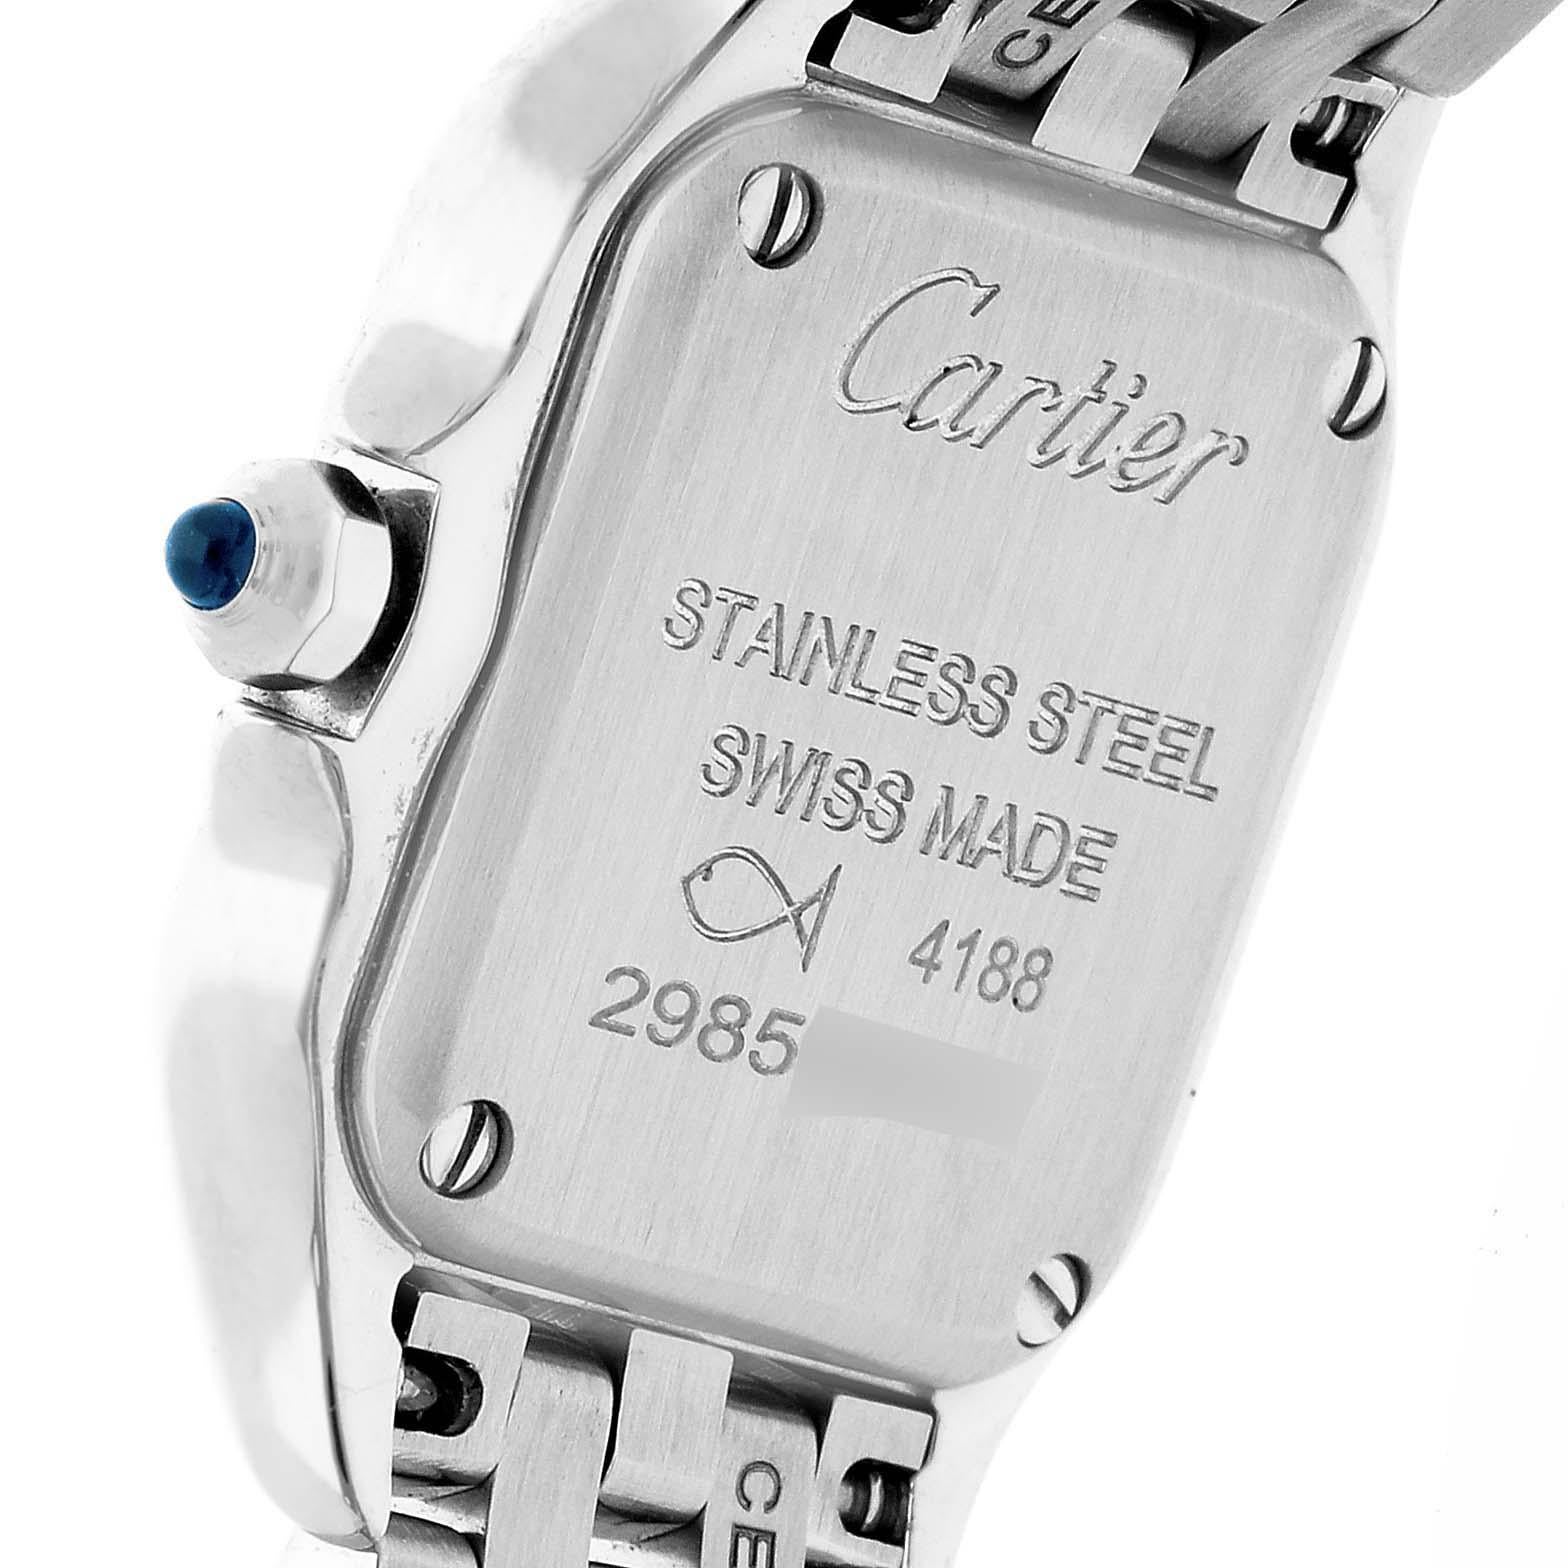 Cartier Panthere Mini Stainless Steel Ladies Watch WSPN0019 Unworn. Mouvement à quartz. Boîtier en acier inoxydable 25,0 x 21,0 mm. Couronne octogonale sertie d'un cabochon de spinelle bleu. Lunette en acier inoxydable poli, fixée par 8 goupilles en